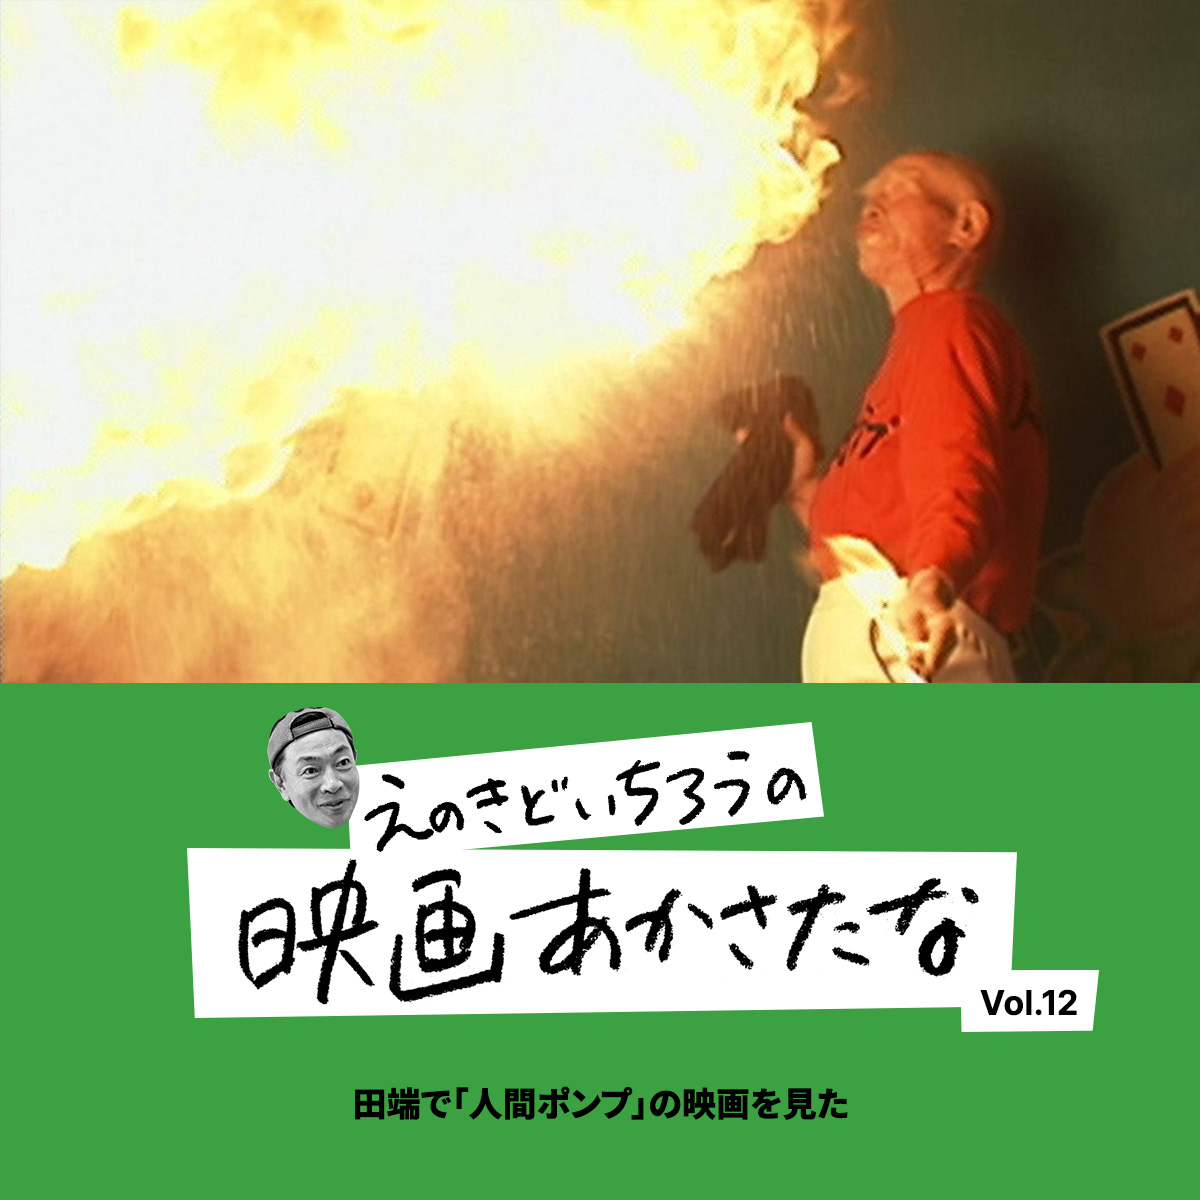 田端で「人間ポンプ」の映画を見た【えのきどいちろうの映画あかさたな Vol.12】